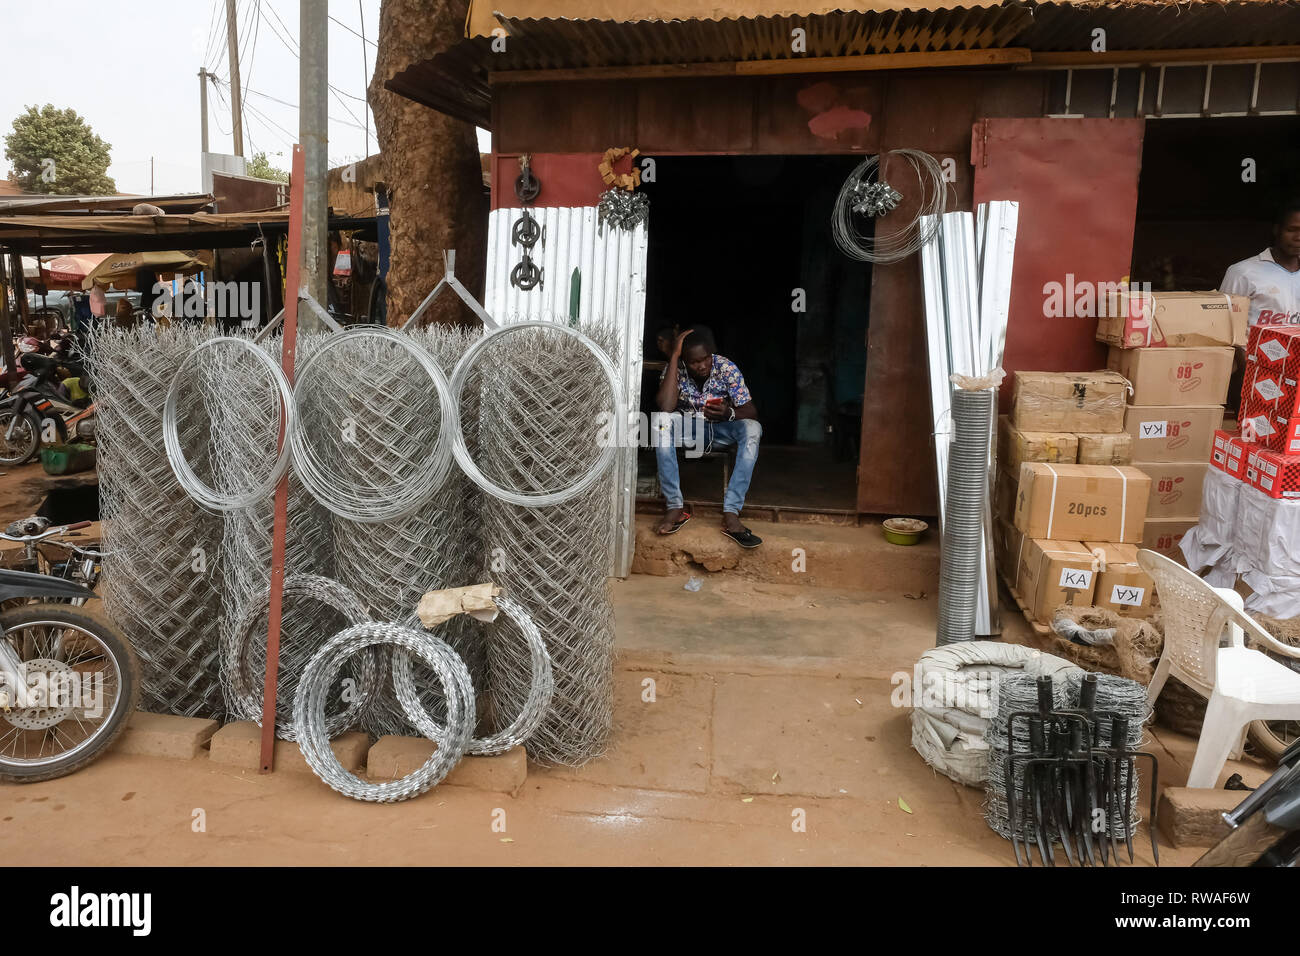 La petite entreprise en Afrique : un homme est assis à un petit commerce de vente de fil de clôture d'acier et d'autres produits métalliques au Burkina Faso, Afrique de l'ouest Banque D'Images